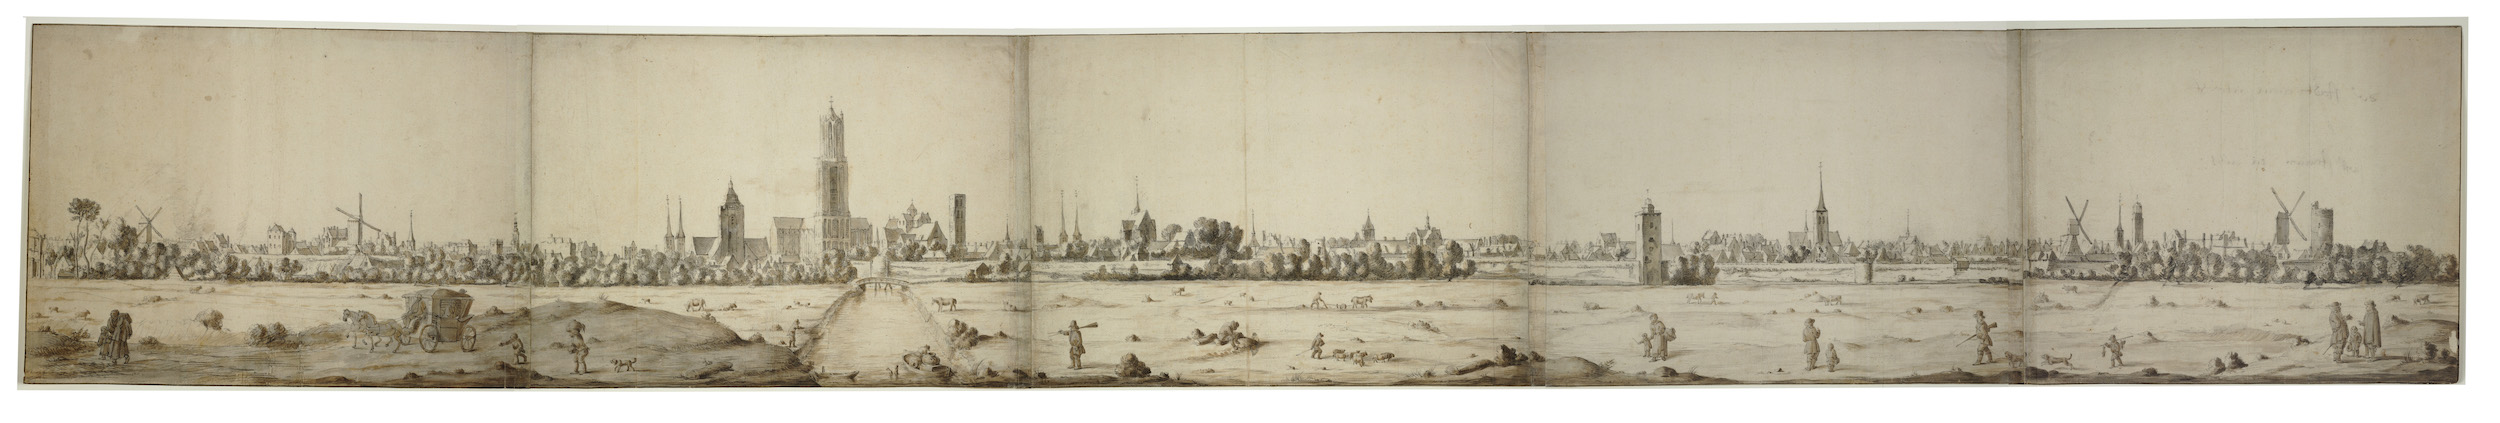 Tekening van Herman Saftleven van profiel stad Utrecht op zes aaneengeplakte bladen 1669 Het Utrechts Archief